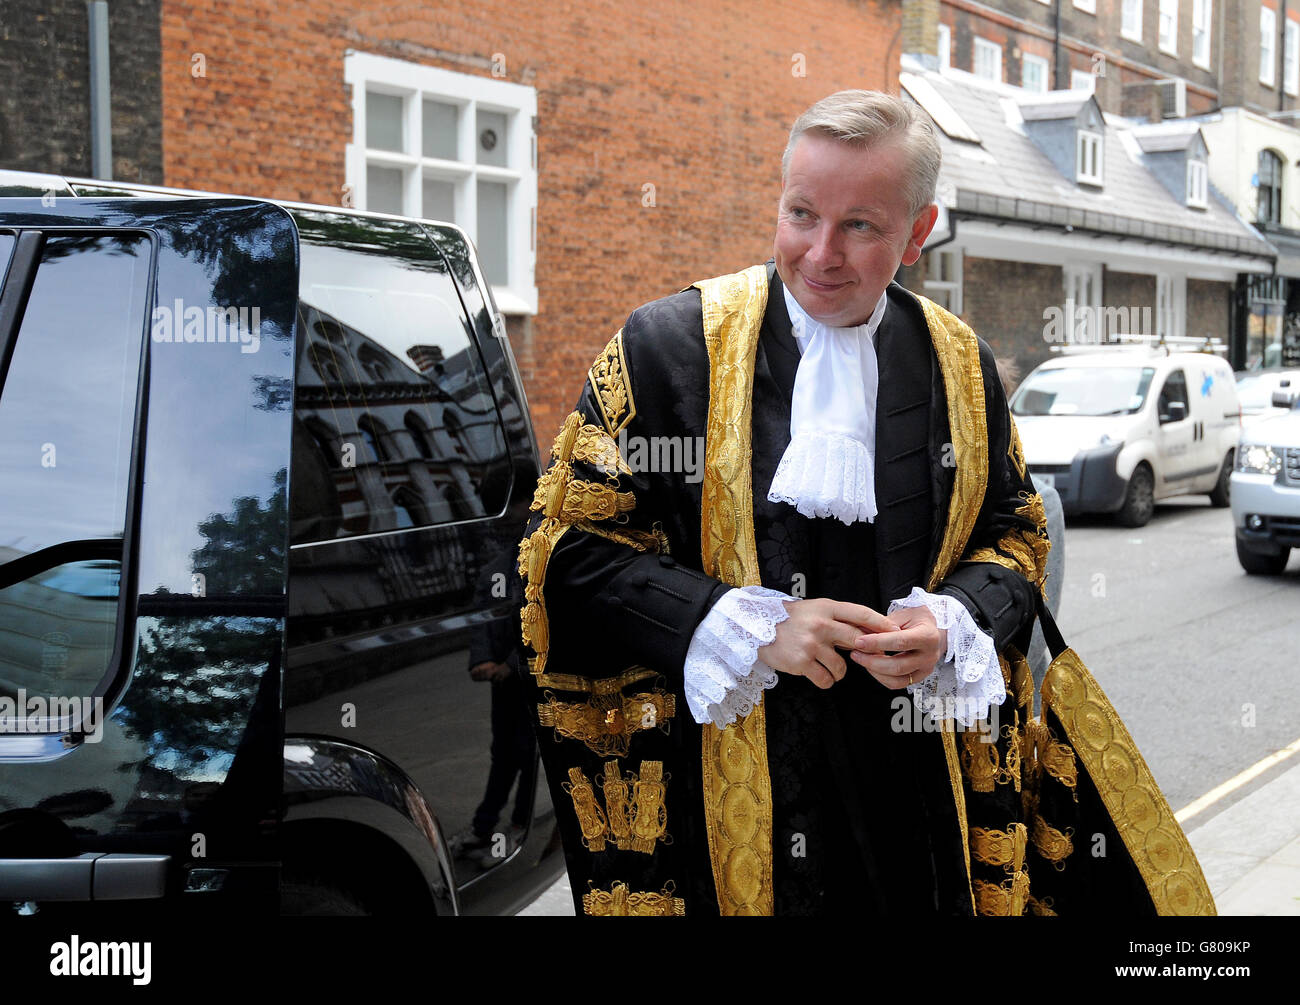 Lord Chancellor Michael Gove kommt zu seiner feierlichen Vereidigung vor den Royal Courts of Justice in London. Stockfoto